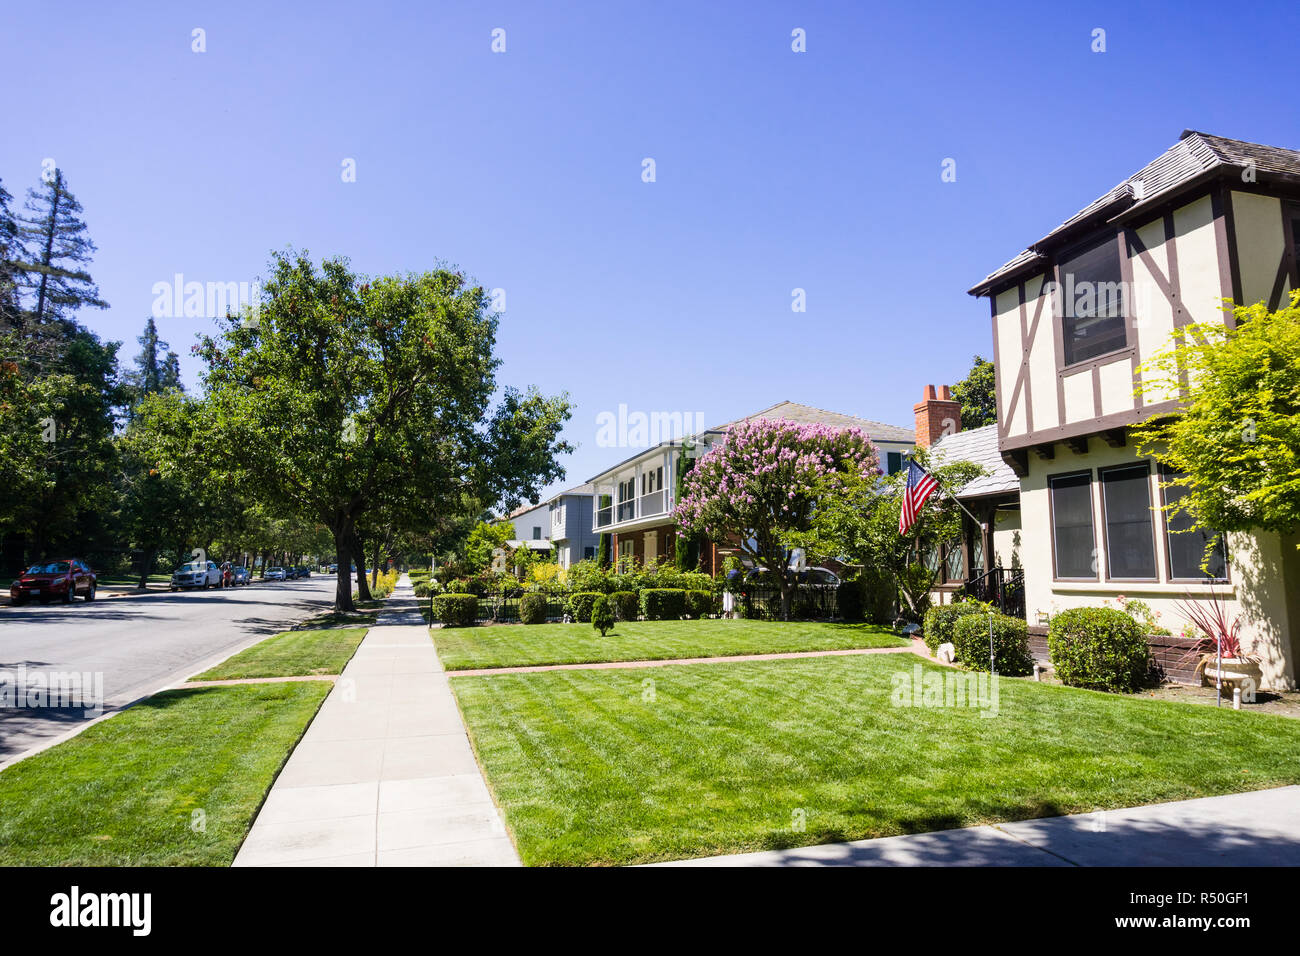 Landschaft im Rosengarten Wohngegend von San Jose, San Francisco Bay Area, Kalifornien Stockfoto